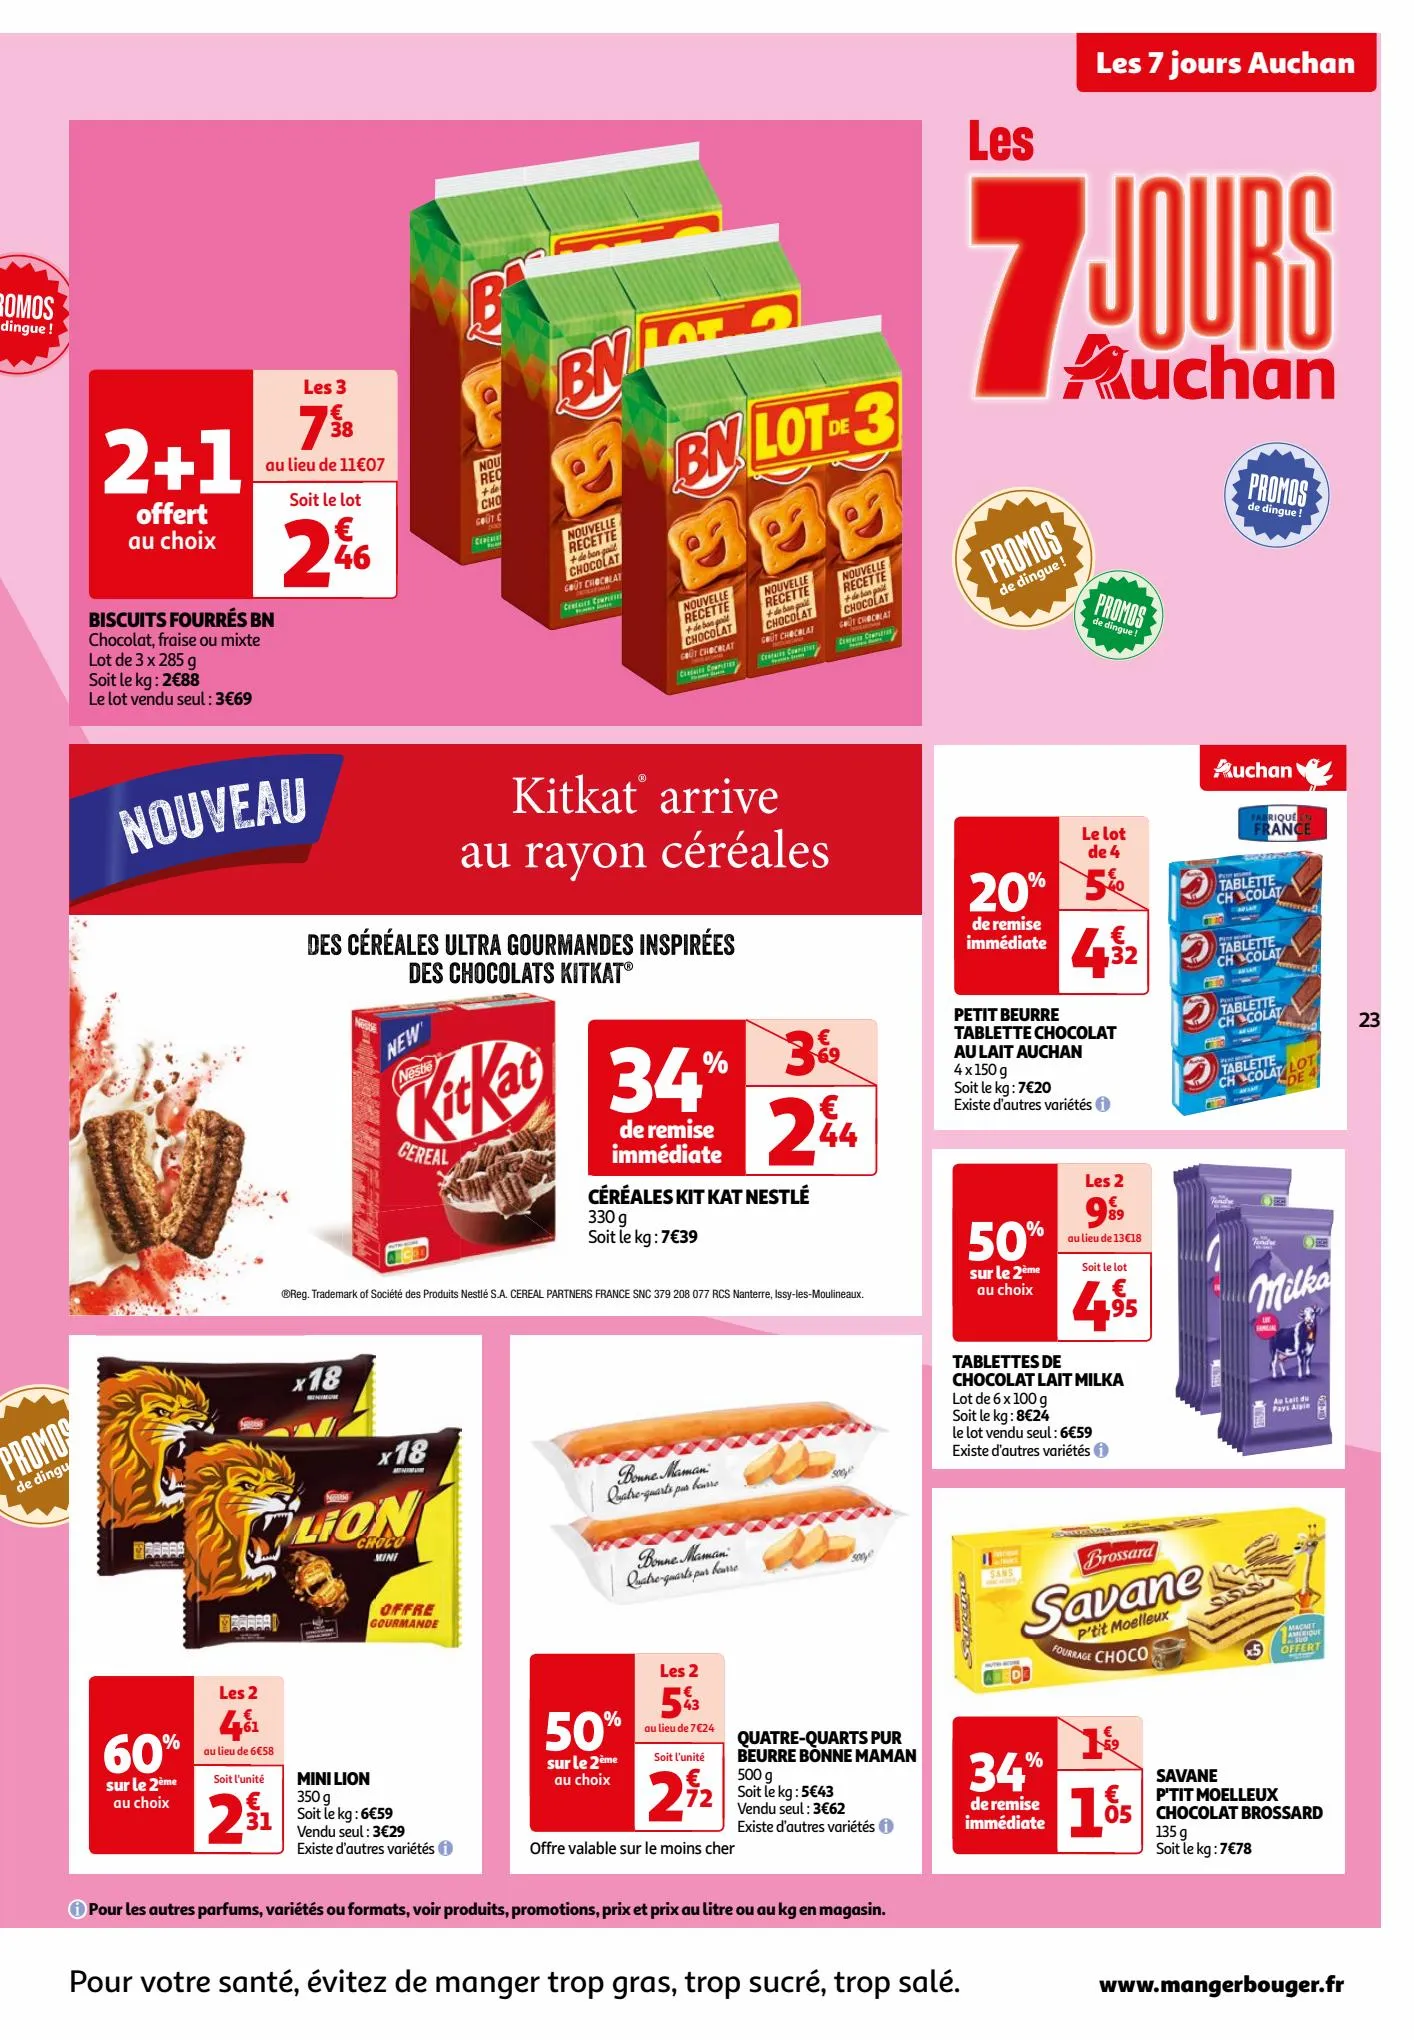 Catalogue Les 7 jours Auchan, page 00023